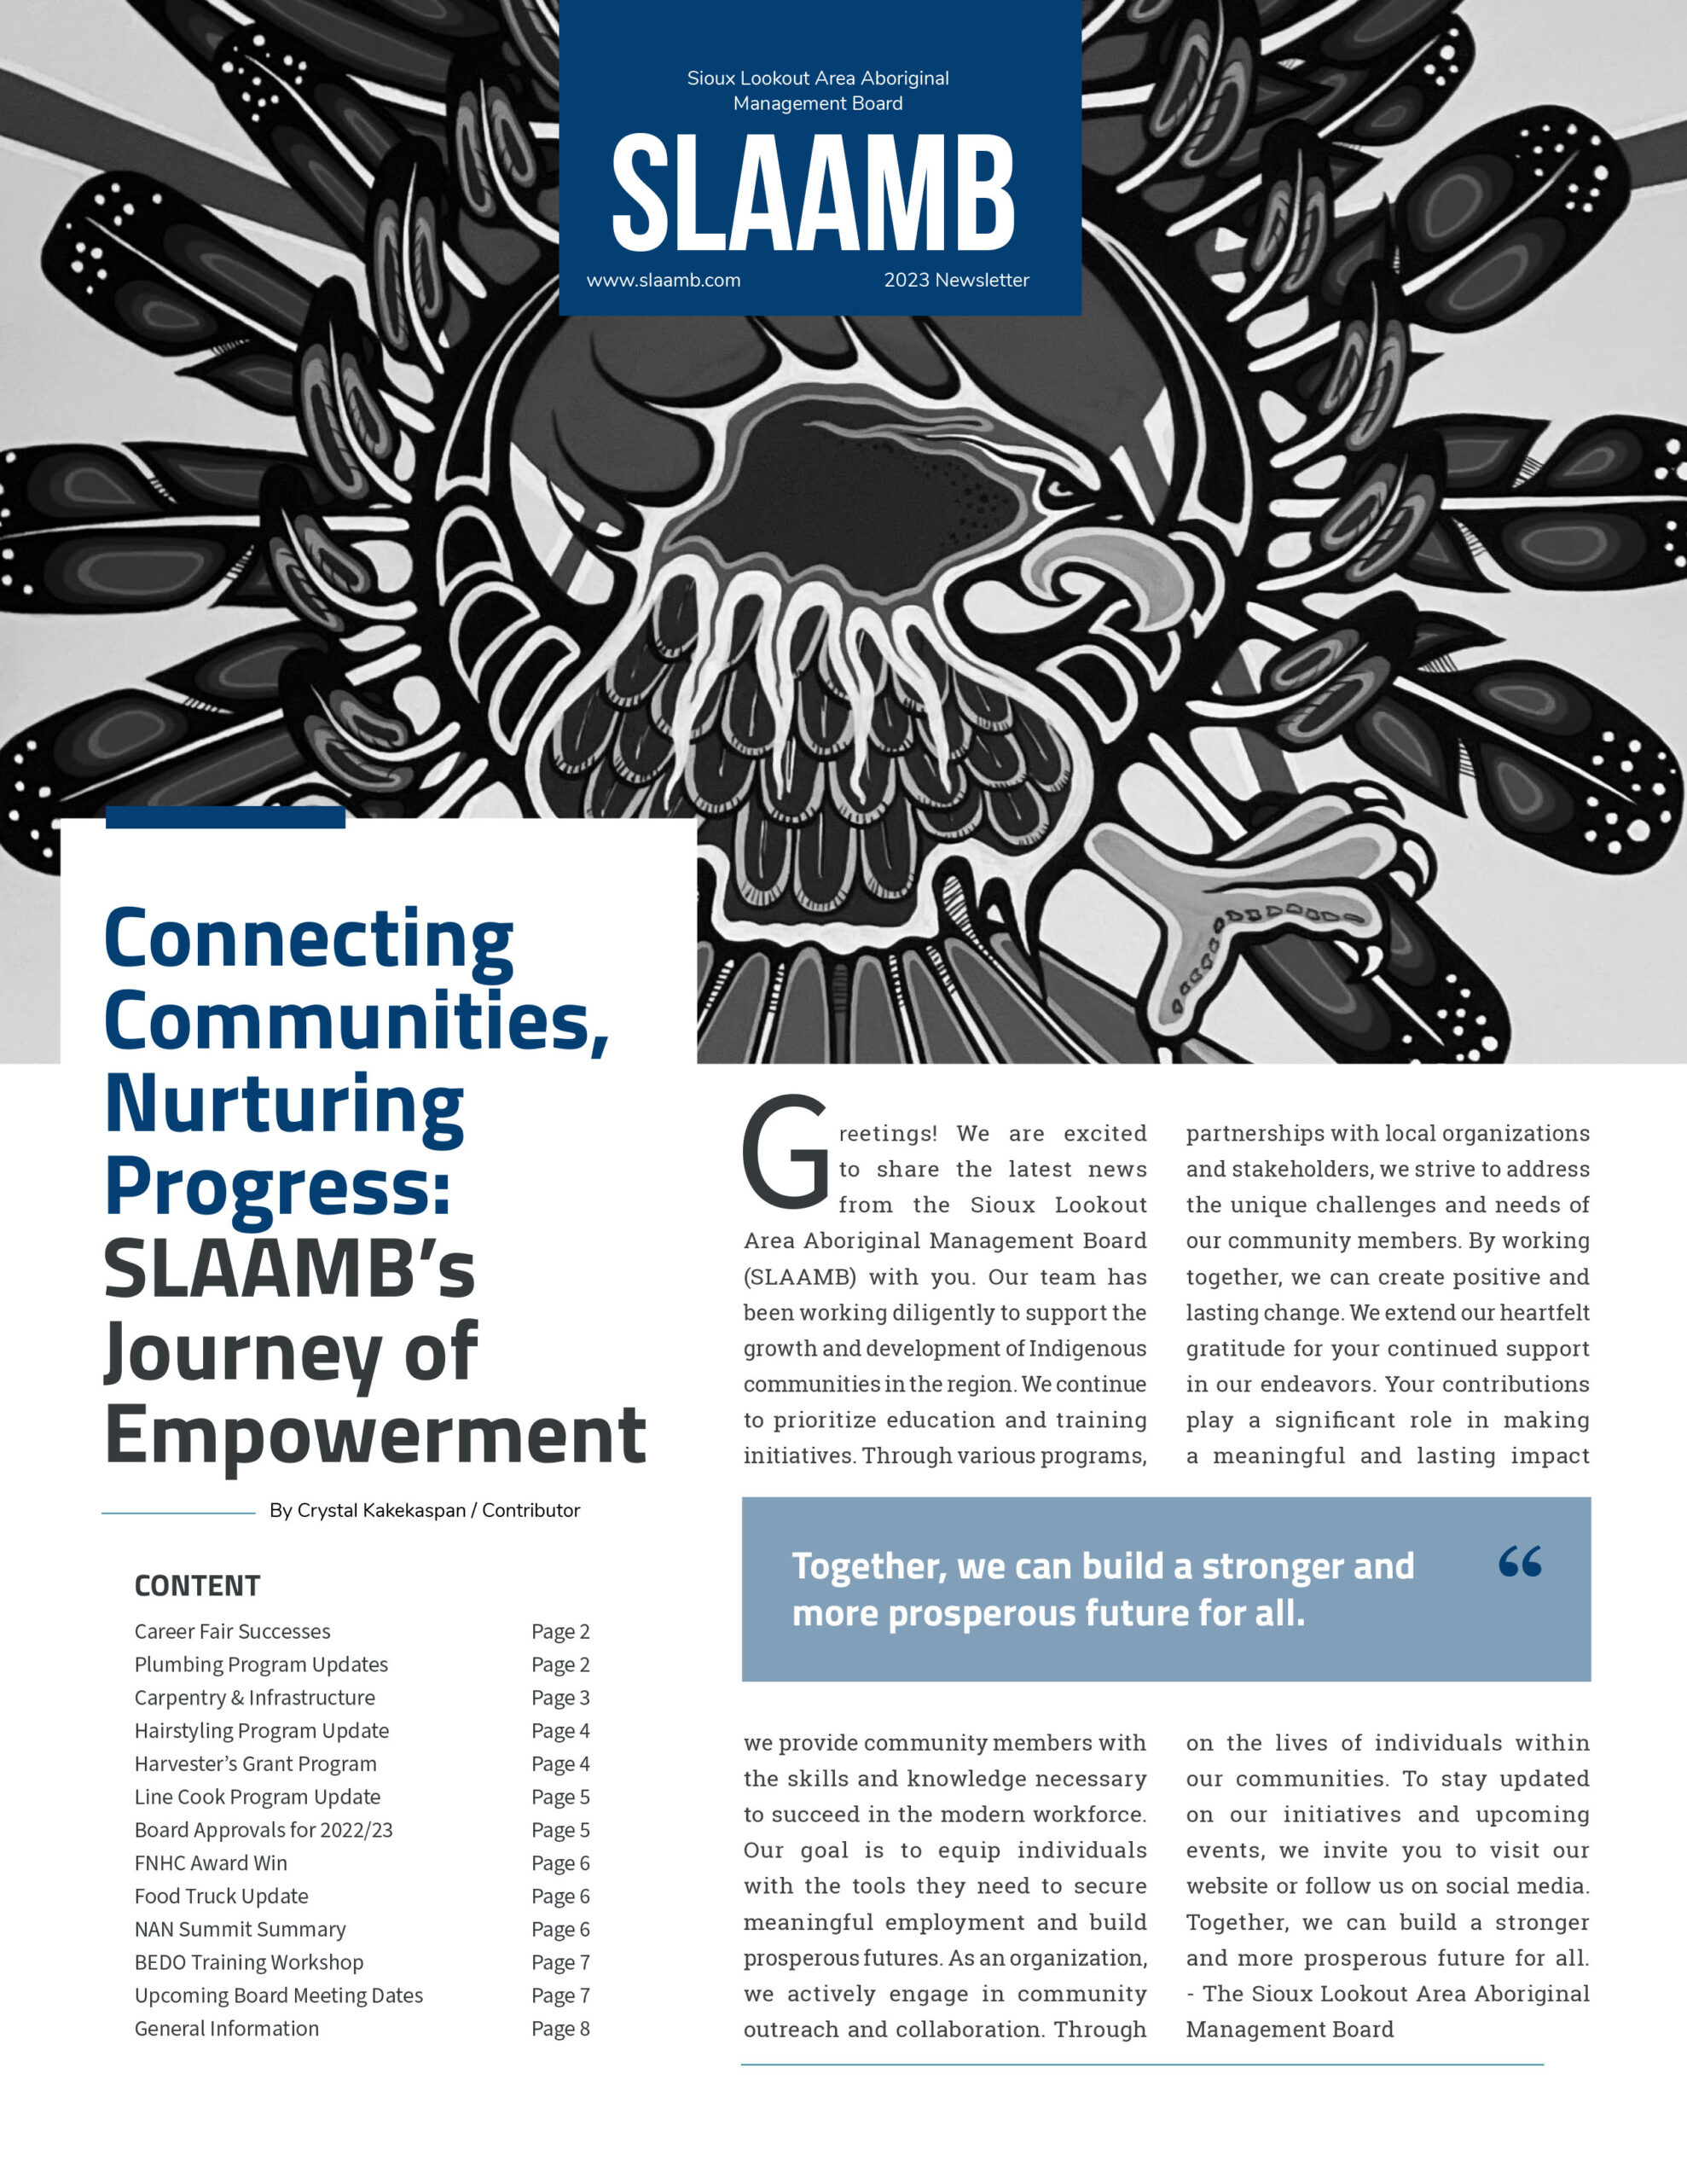 Connecting Communities, Nurturing Progress: SLAAMB’s Journey of Empowerment